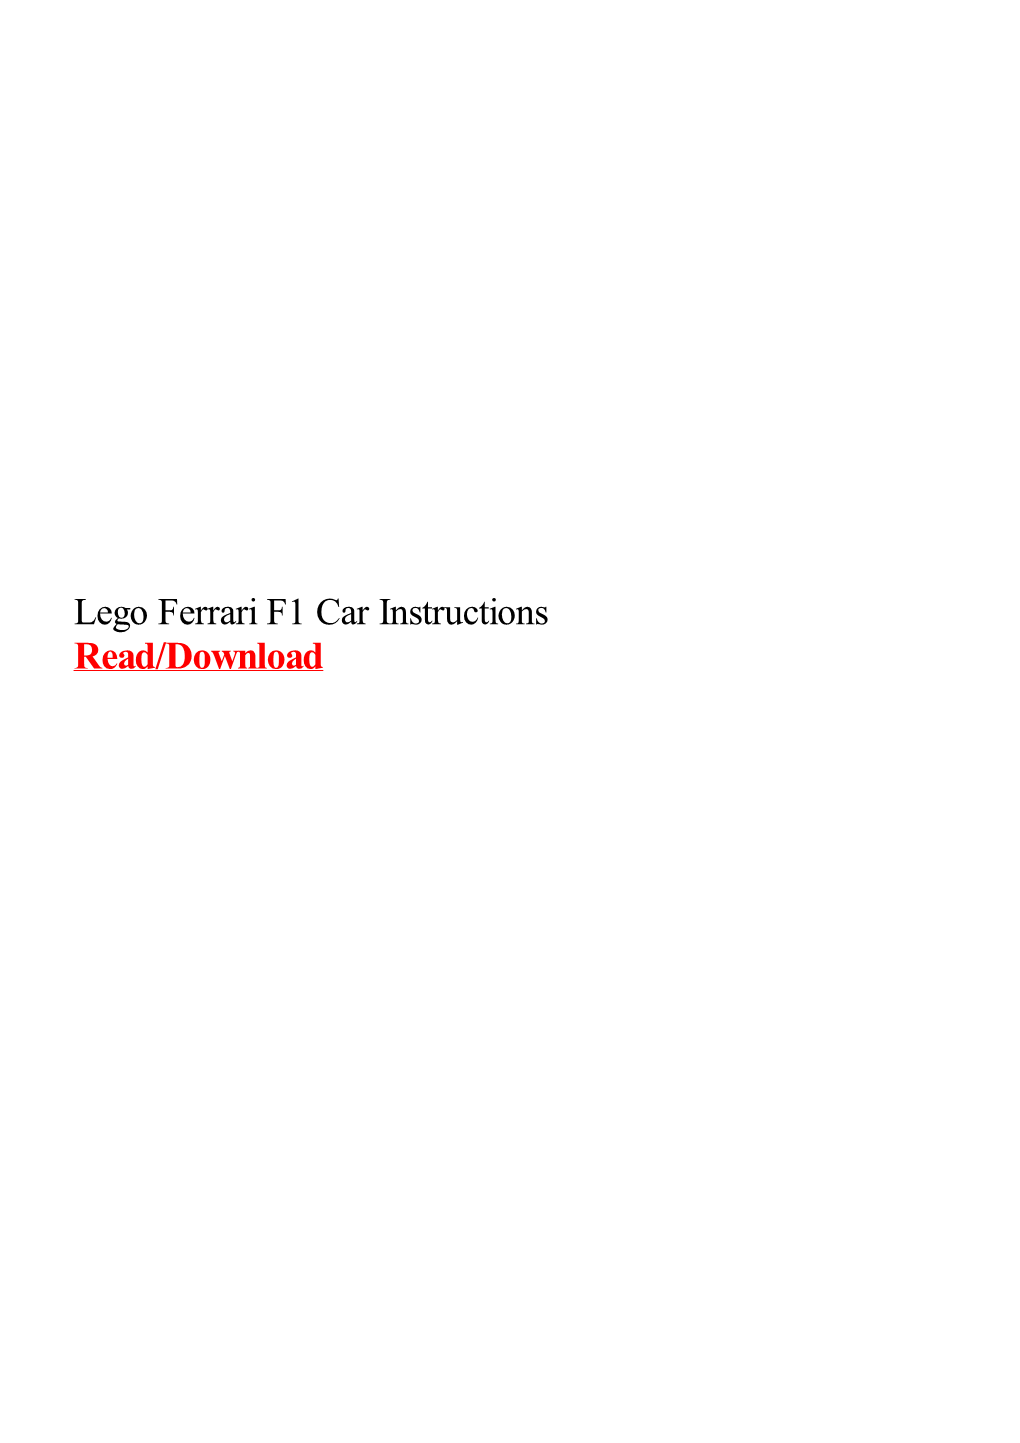 Lego Ferrari F1 Car Instructions for Watching